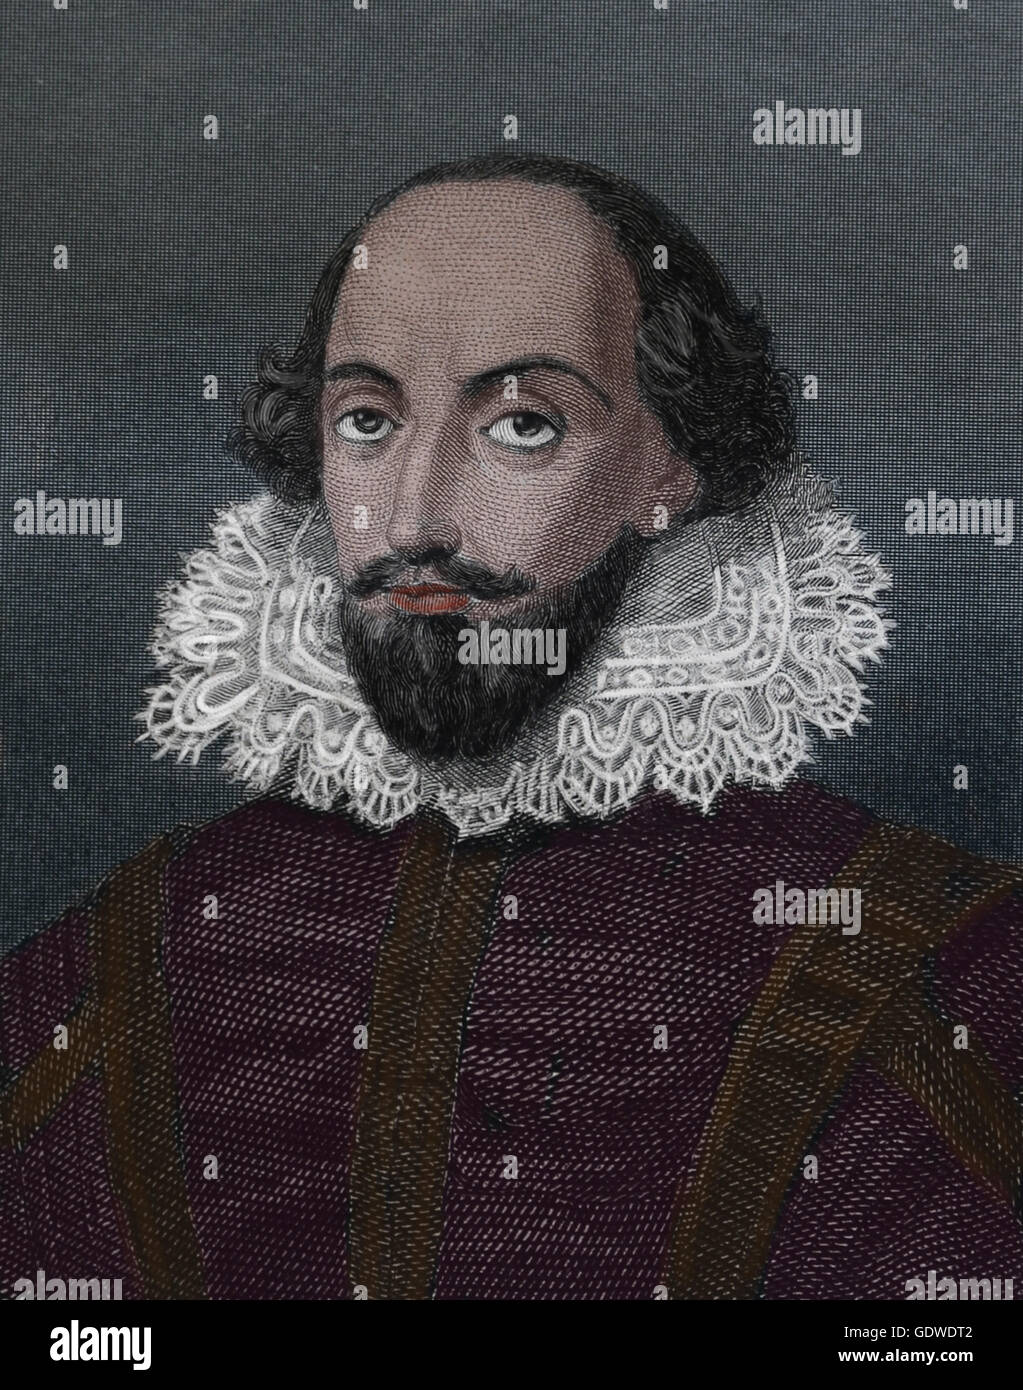 William Shakespeare (1564-1616). Englischer Schriftsteller. Renaissance. Elizabethan Era. Porträt. Kupferstich, 19. Jahrhundert. Farbe. Stockfoto